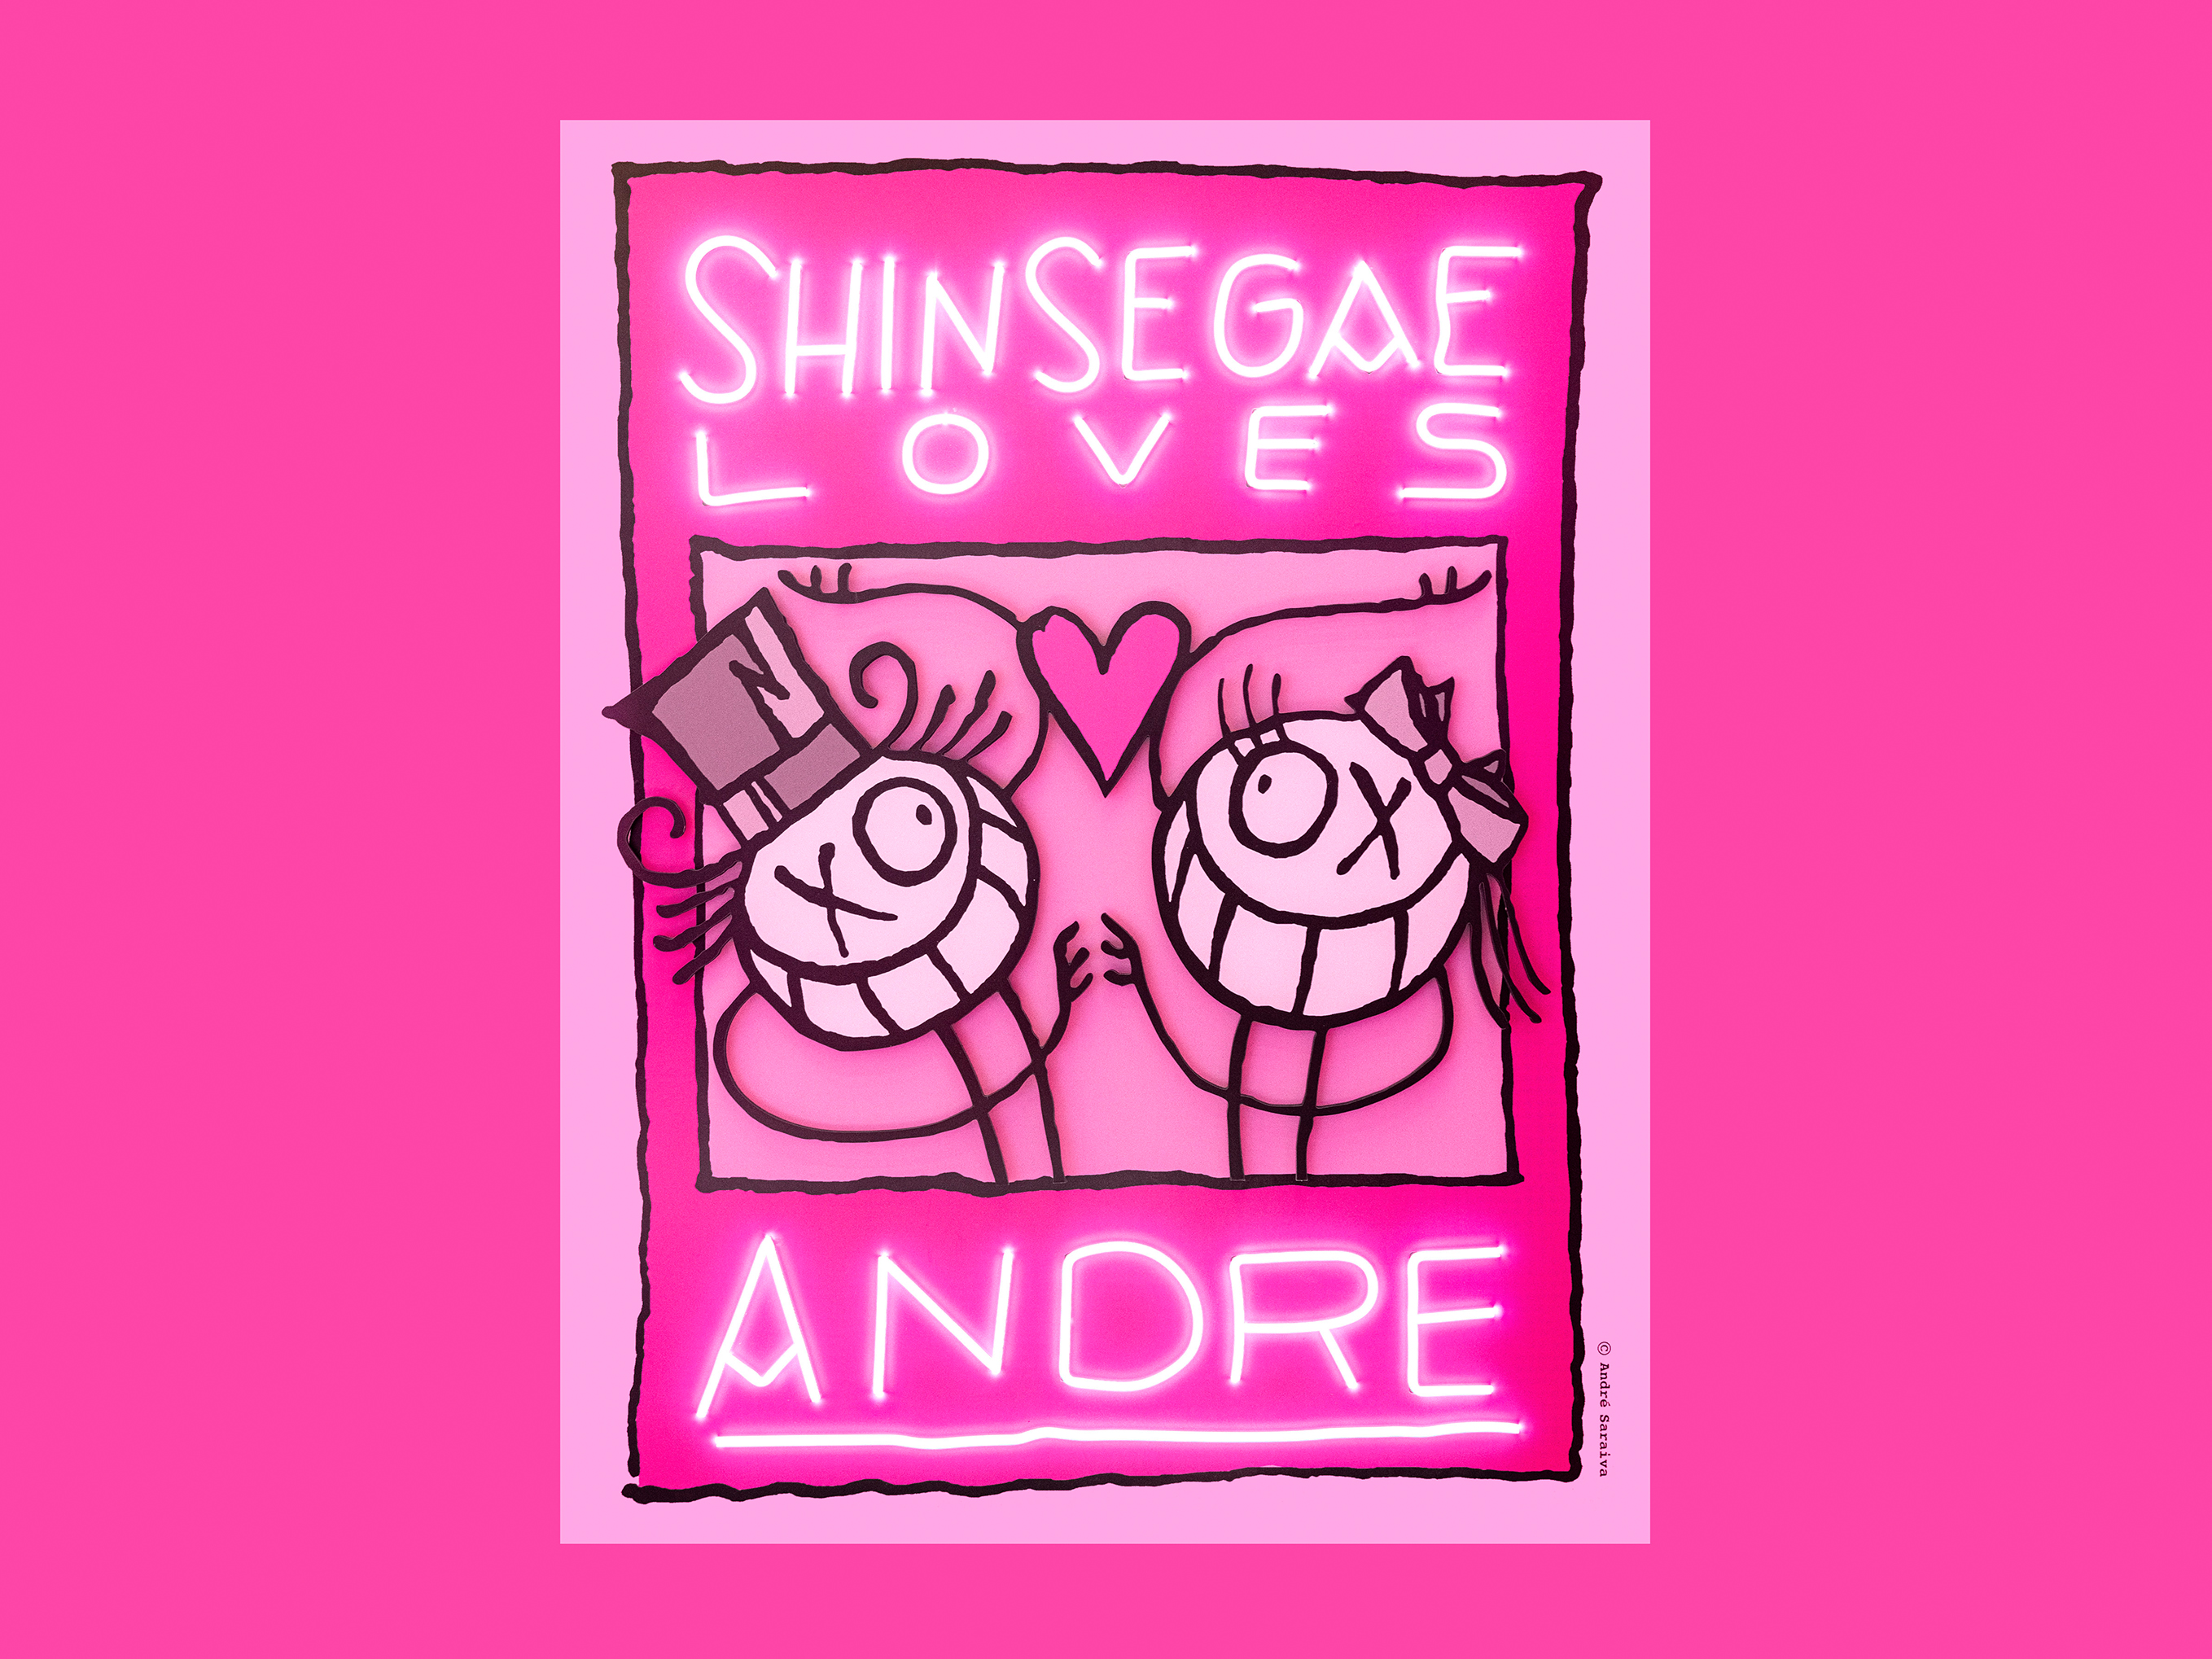 Andre Loves Shinsegae